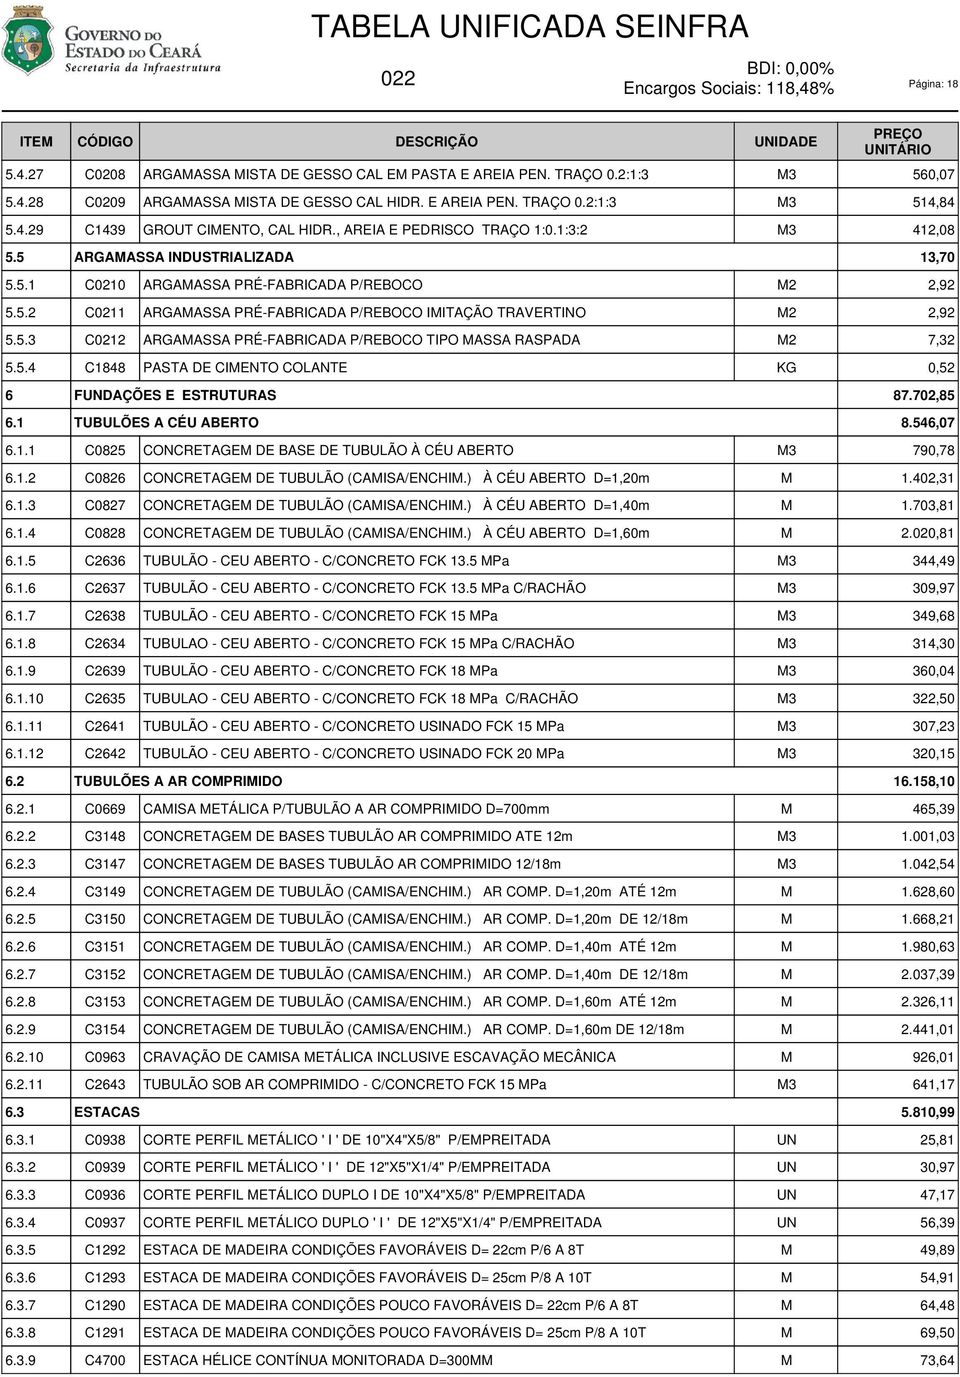 5.2 C0211 ARGAASSA PRÉ-FABRICADA P/REBOCO IITAÇÃO TRAVERTINO 2,92 5.5.3 C0212 ARGAASSA PRÉ-FABRICADA P/REBOCO TIPO ASSA RASPADA 7,32 5.5.4 C1848 PASTA DE CIENTO COLANTE KG 0,52 6 6.